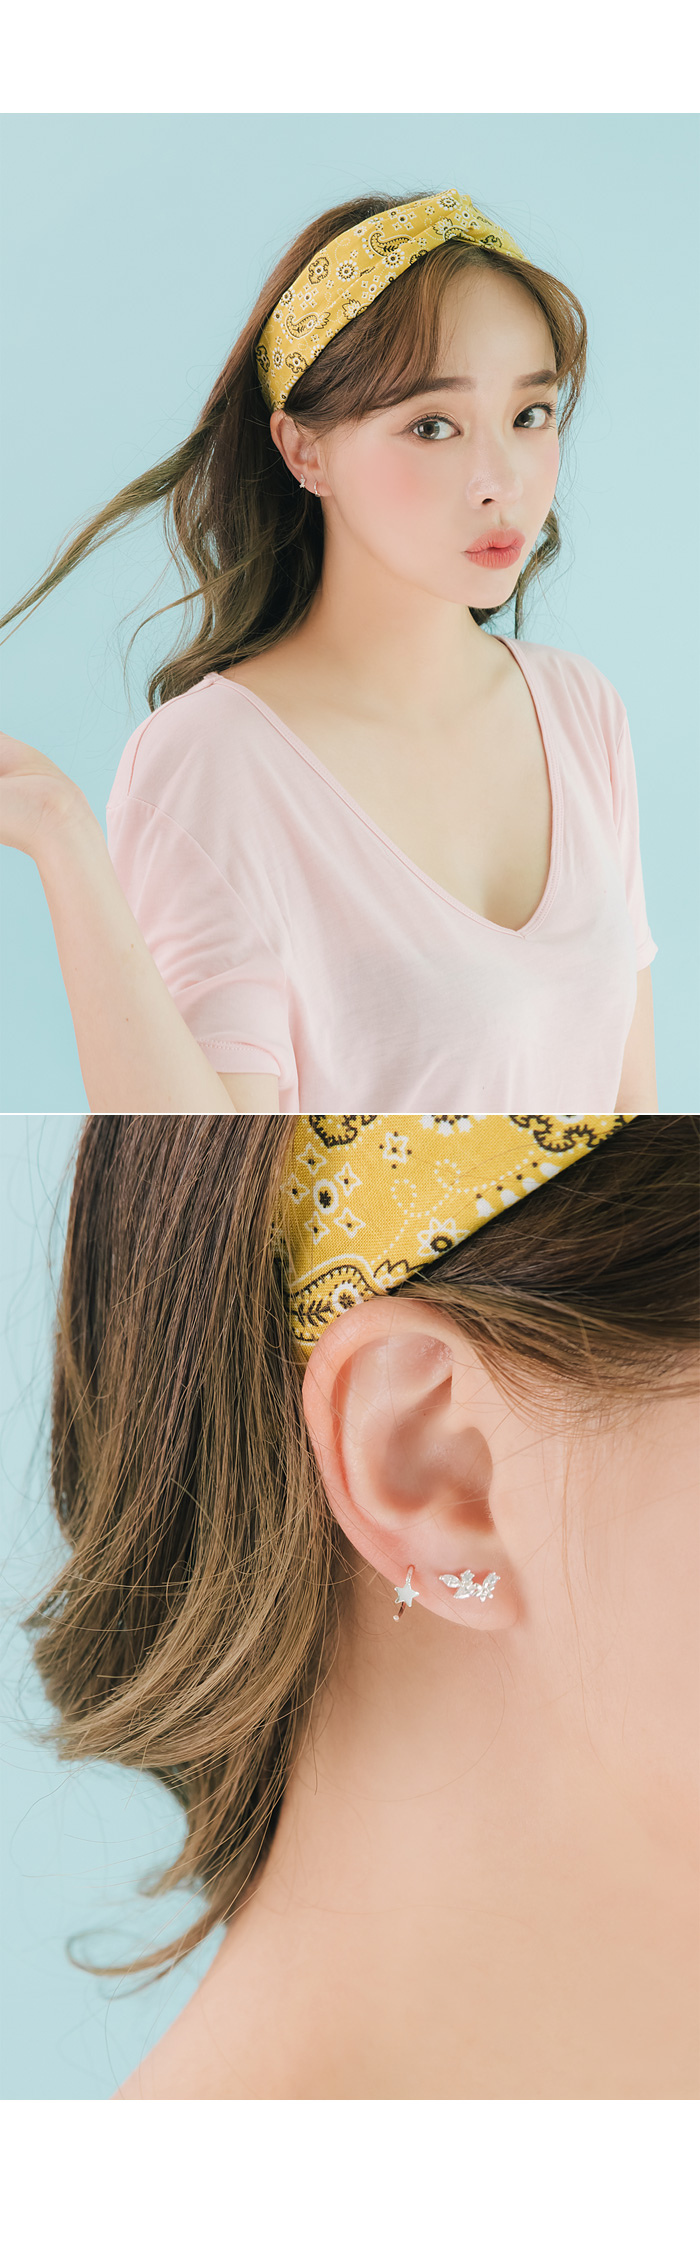 [실버] 릴리 미니 꽃 귀걸이 9,000원 - 폭스타일 패션잡화, 주얼리, 귀걸이, 실버 바보사랑 [실버] 릴리 미니 꽃 귀걸이 9,000원 - 폭스타일 패션잡화, 주얼리, 귀걸이, 실버 바보사랑